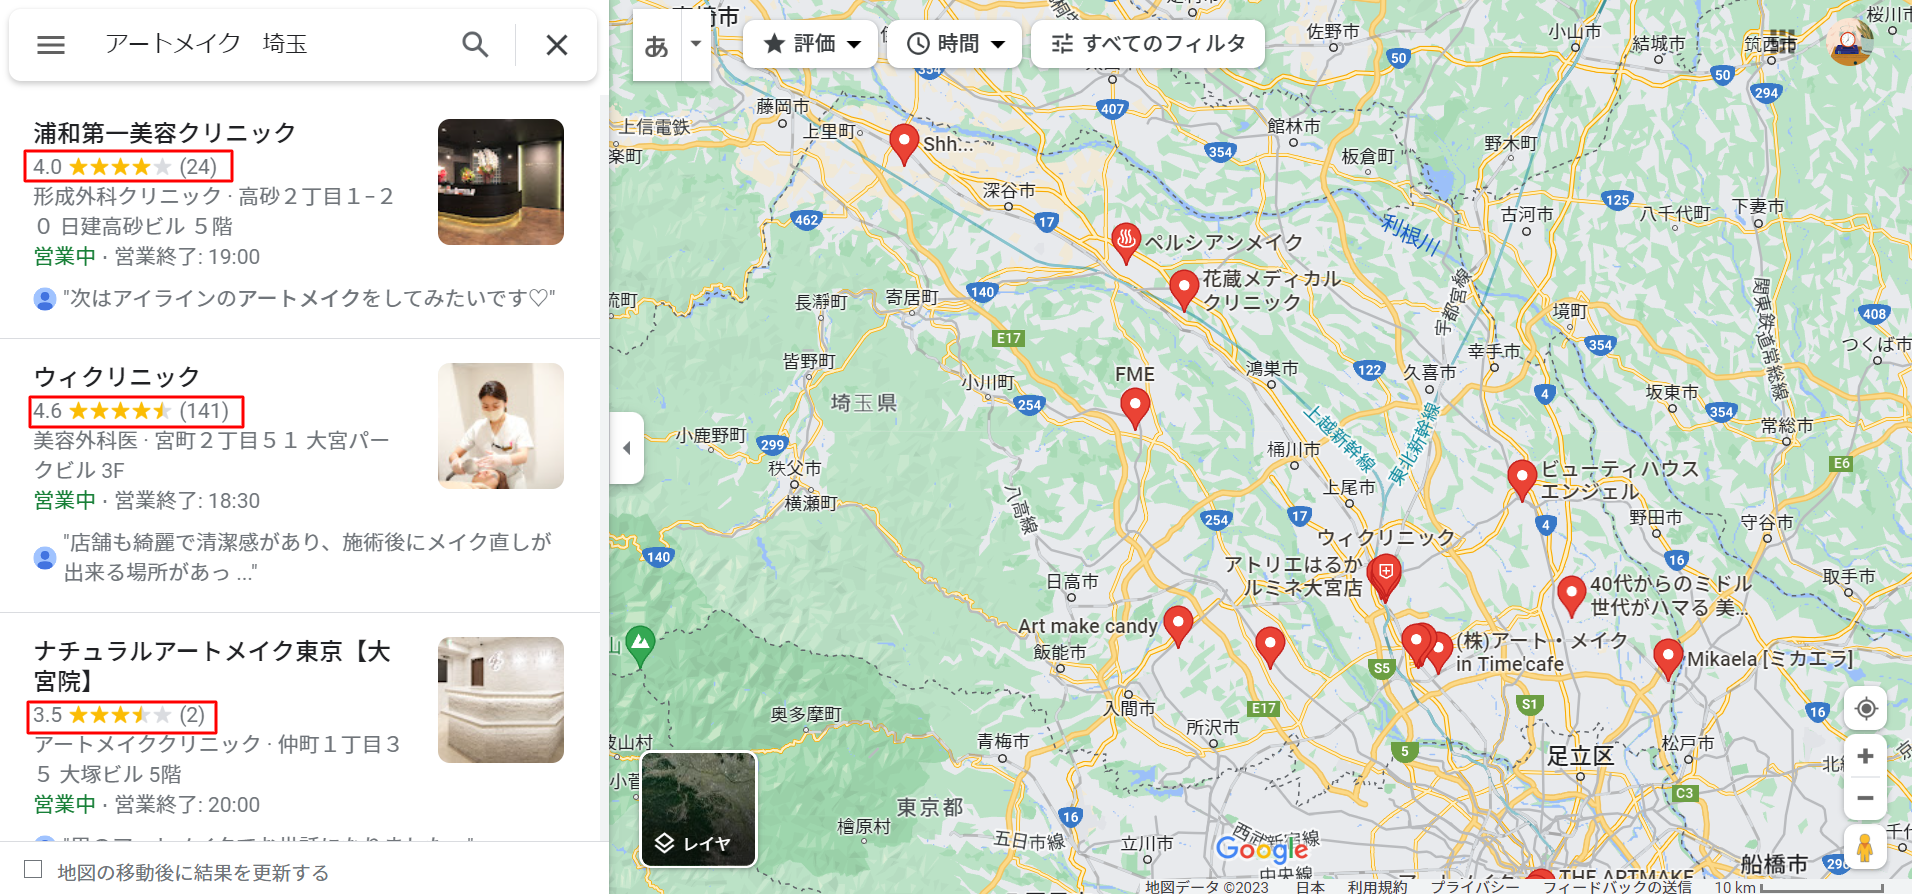 アートメイク-埼玉-Google-マップ